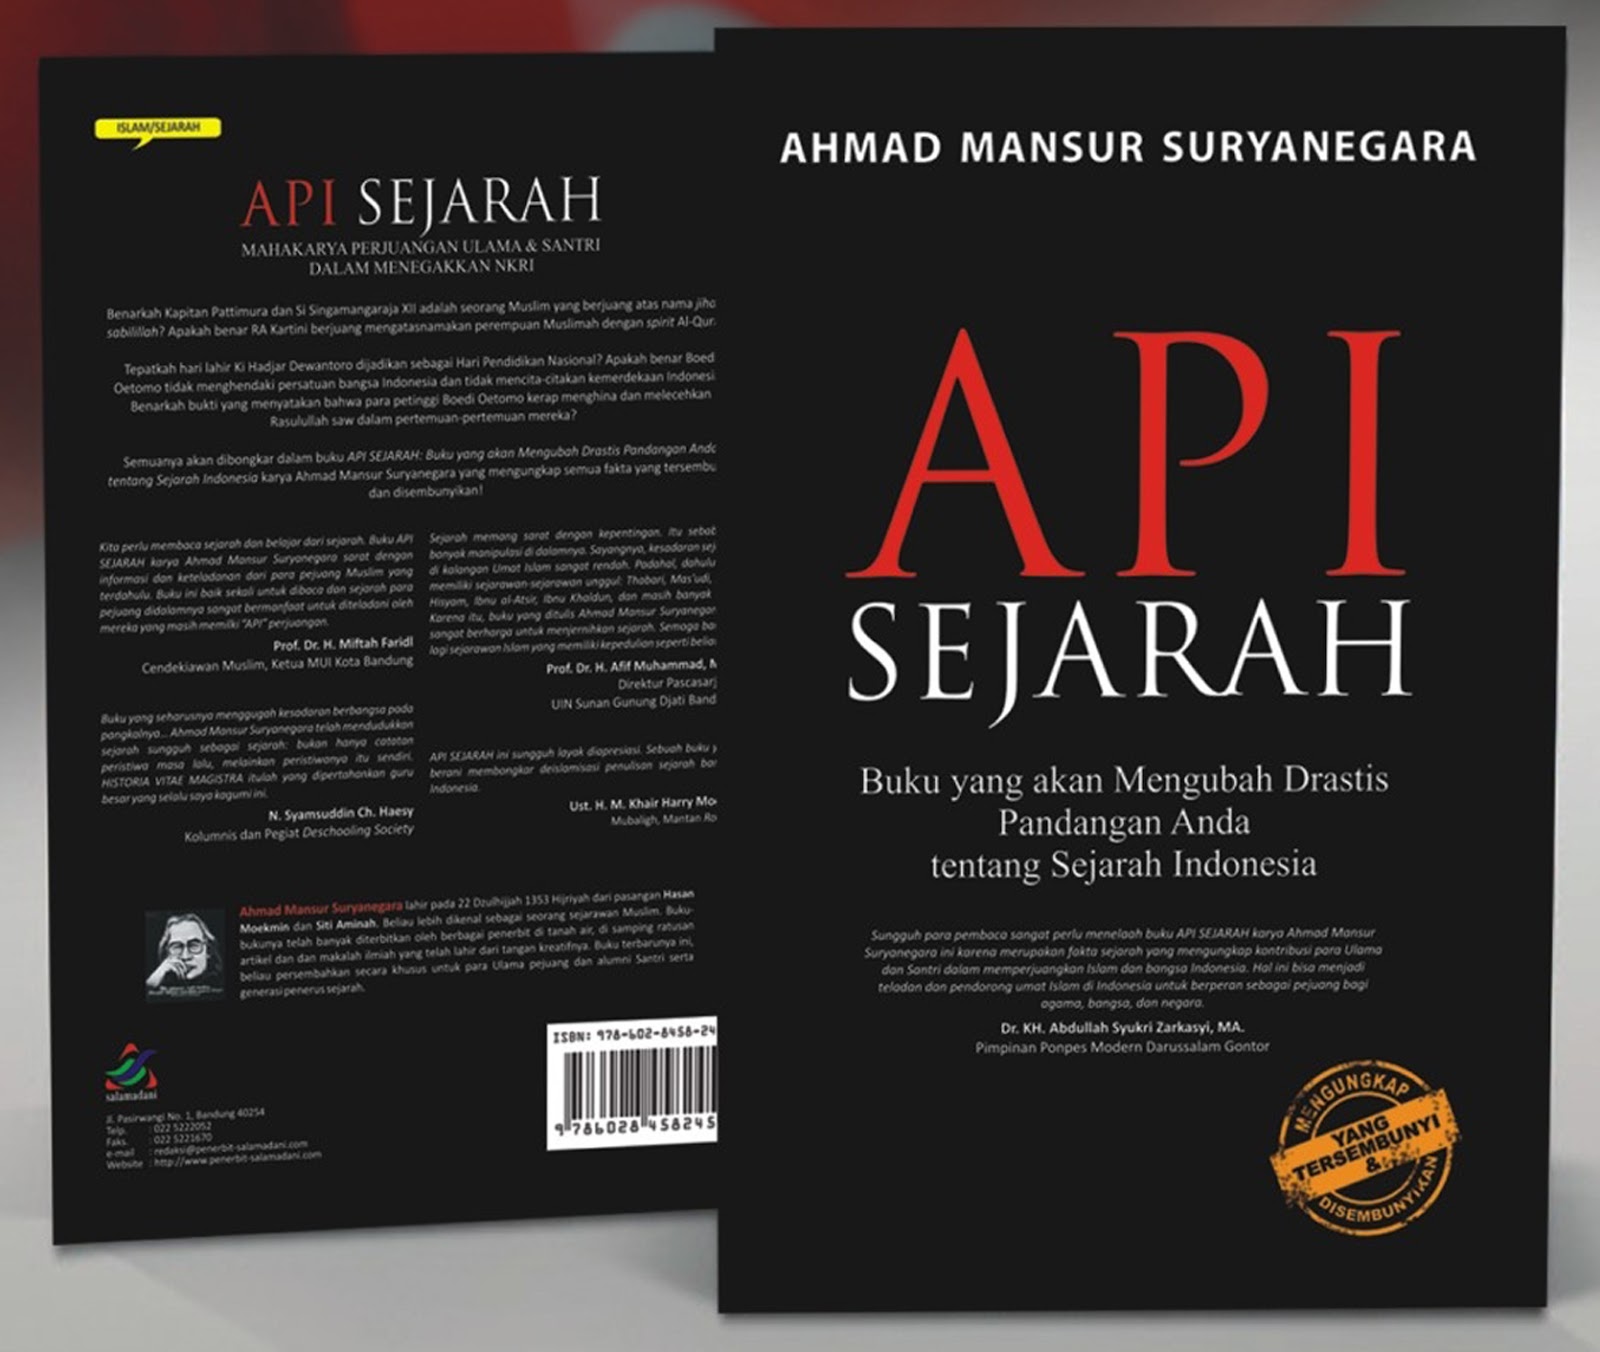 Buku Api Sejarah yang ditulis oleh sejarawan Indonesia Prof Ahmad Mansur Suryanegara mengajak kita untuk menengok kembali sejarah Indonesia dari kacamata